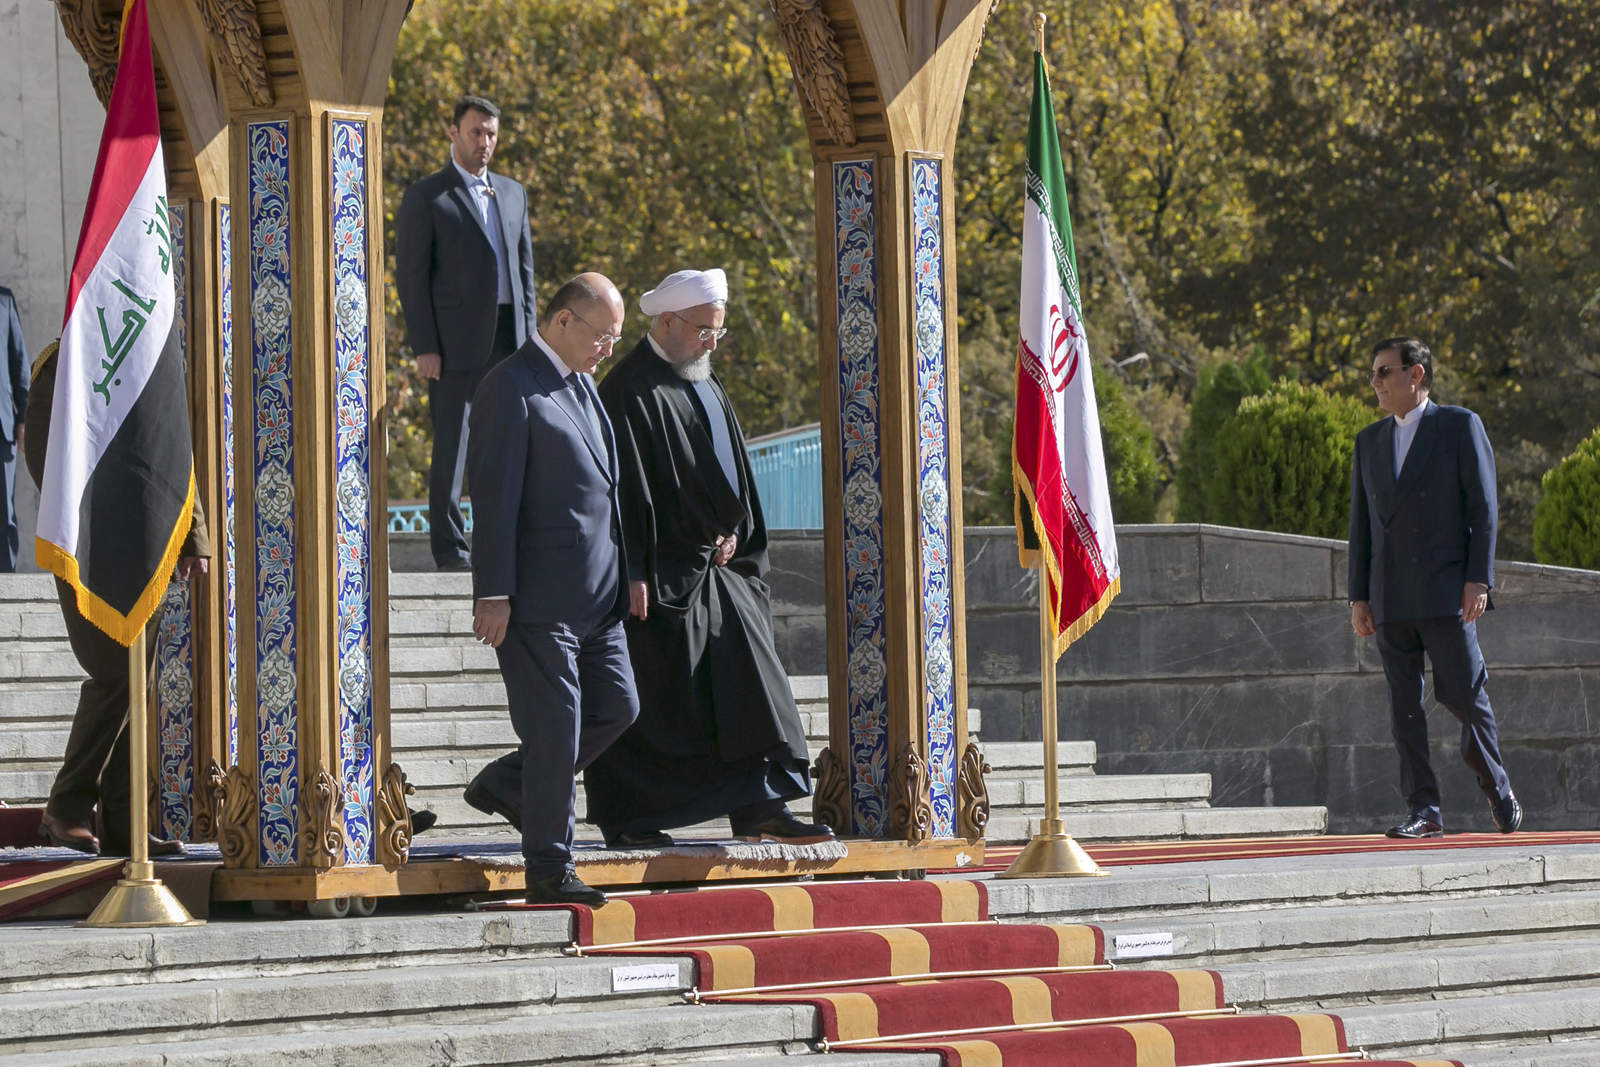 Ambos mandatarios ofrecieron una conferencia de prensa conjunta después de sostener conversaciones este sábado en Teherán, la capital iraní, donde Salih cumplió su primera visita oficial desde que asumió la presidencia de Irak, el mes pasado. (AP)